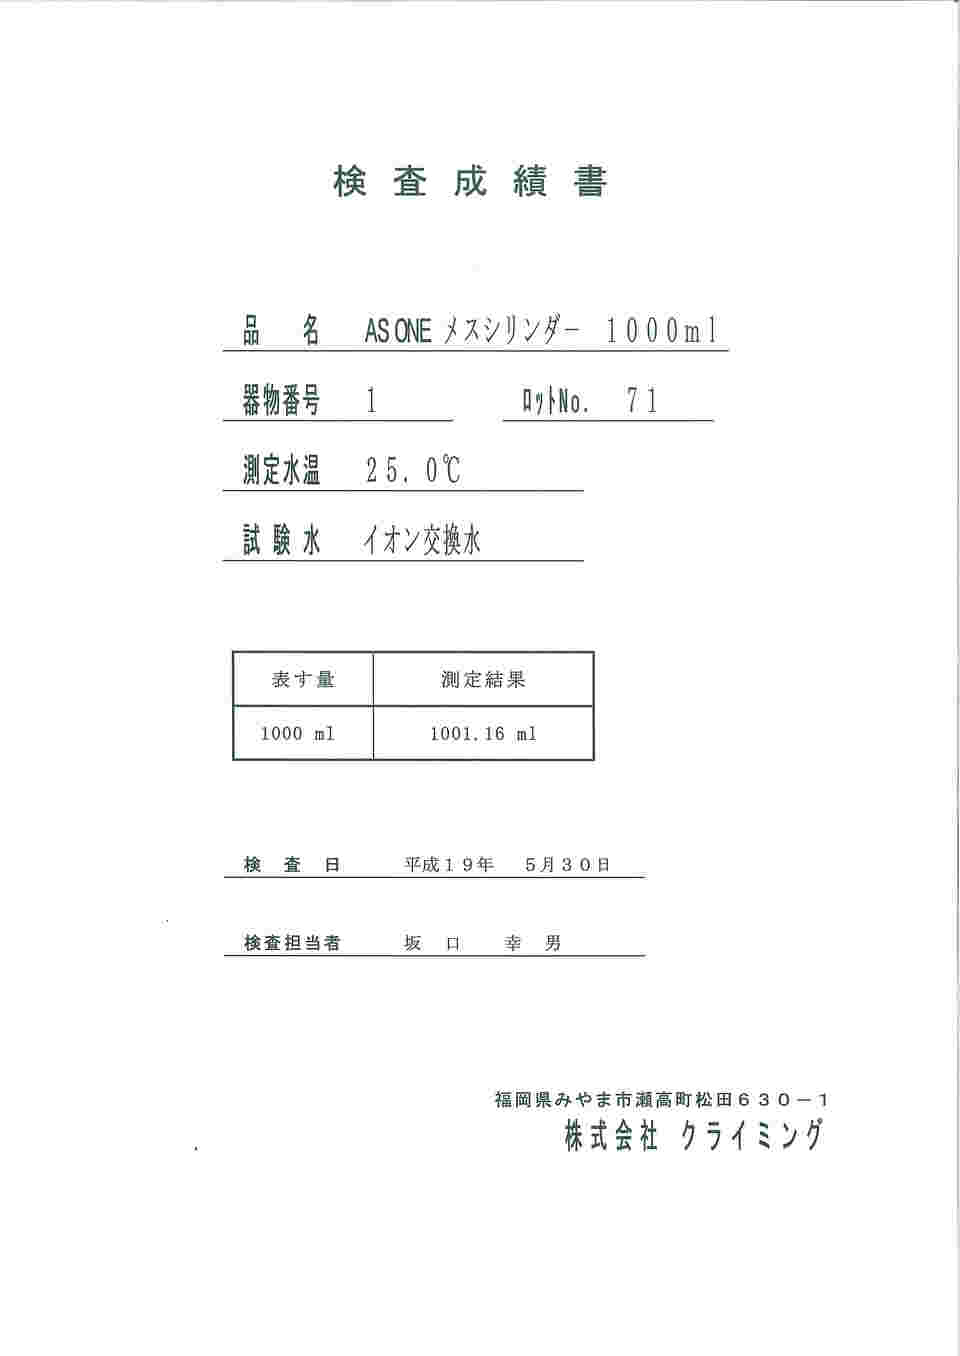 61-9597-24 メスフラスコ 茶 5 検査成績書付 CL2031-01-10 【AXEL